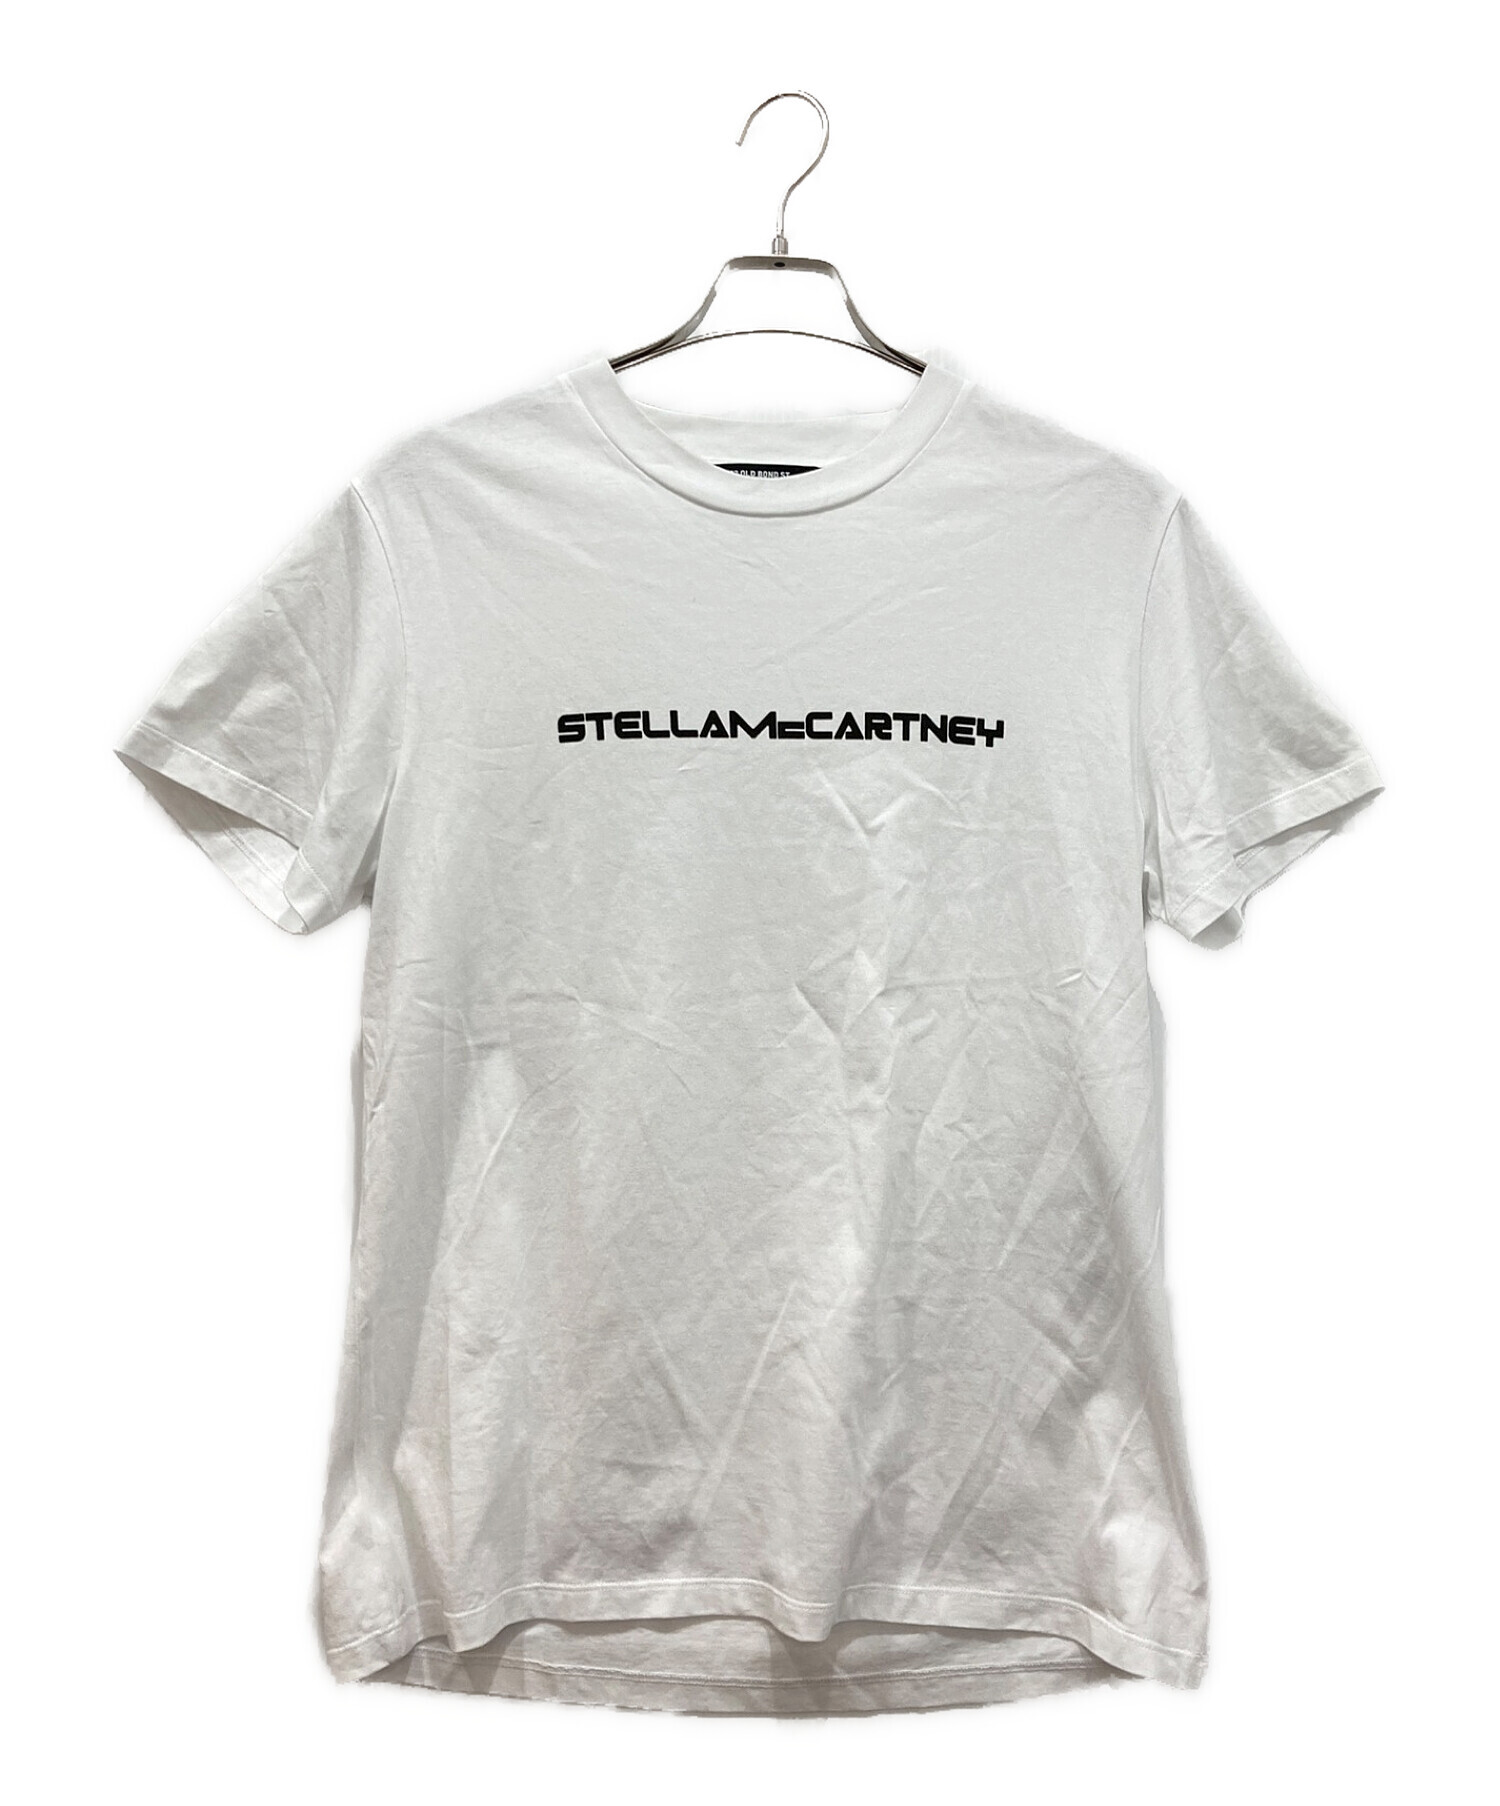 STELLA McCARTNEY (ステラマッカートニー) ロゴTシャツ ホワイト サイズ:M